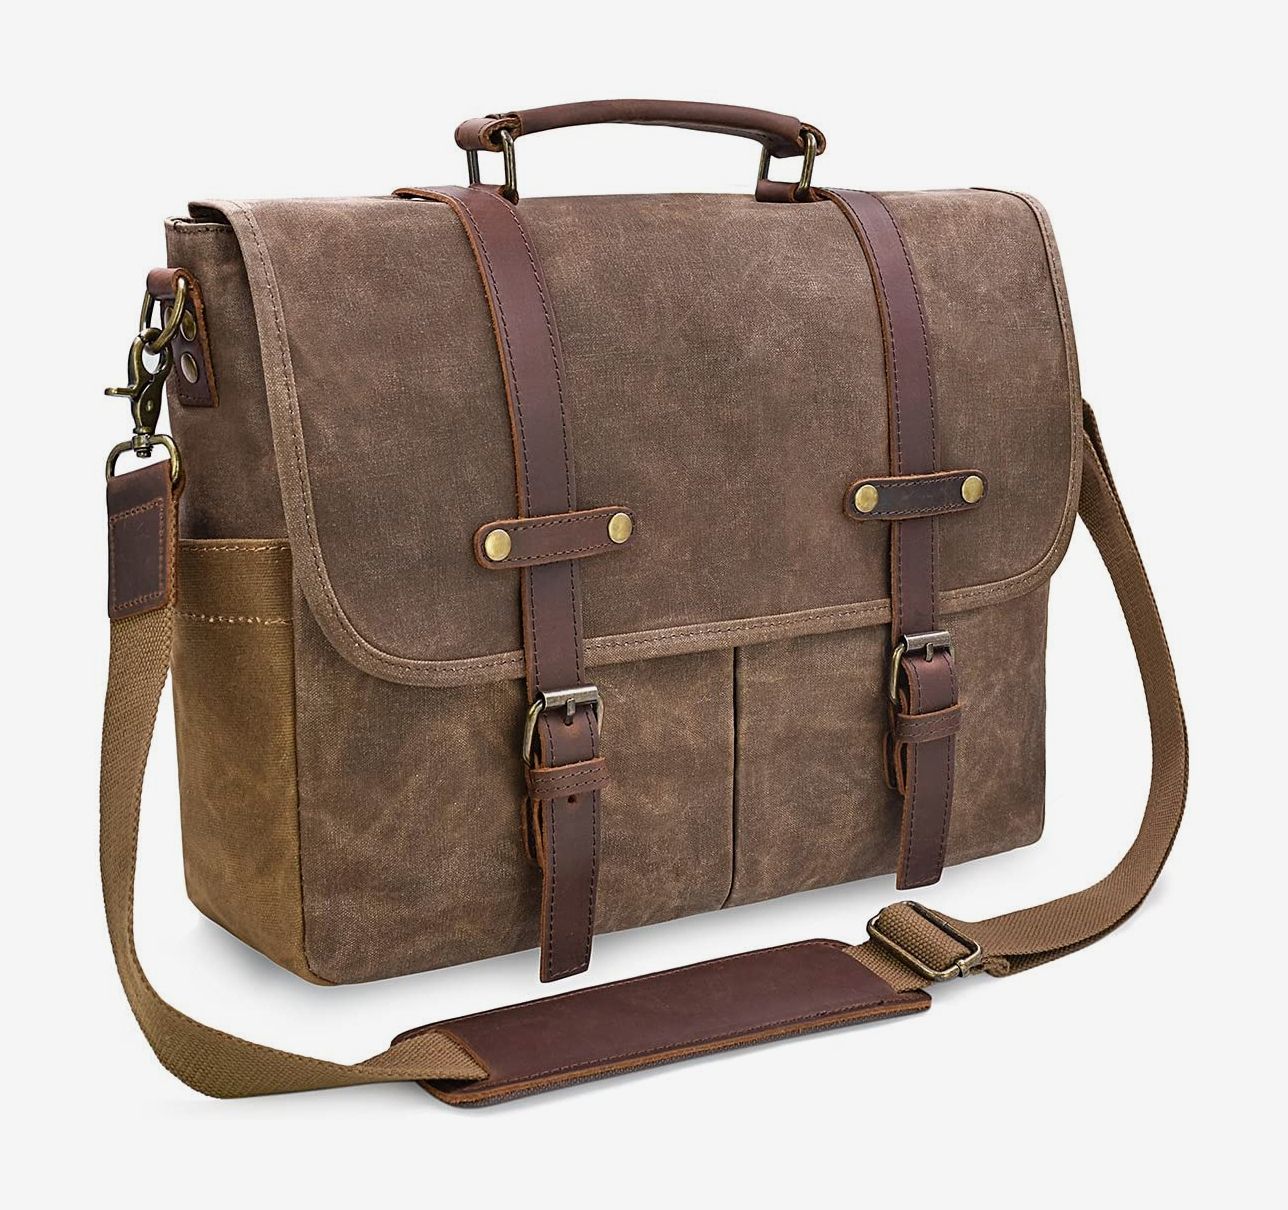 Large Men's Leather Bag Business Messenger Laptop Shoulder Briefcase USA Handbag